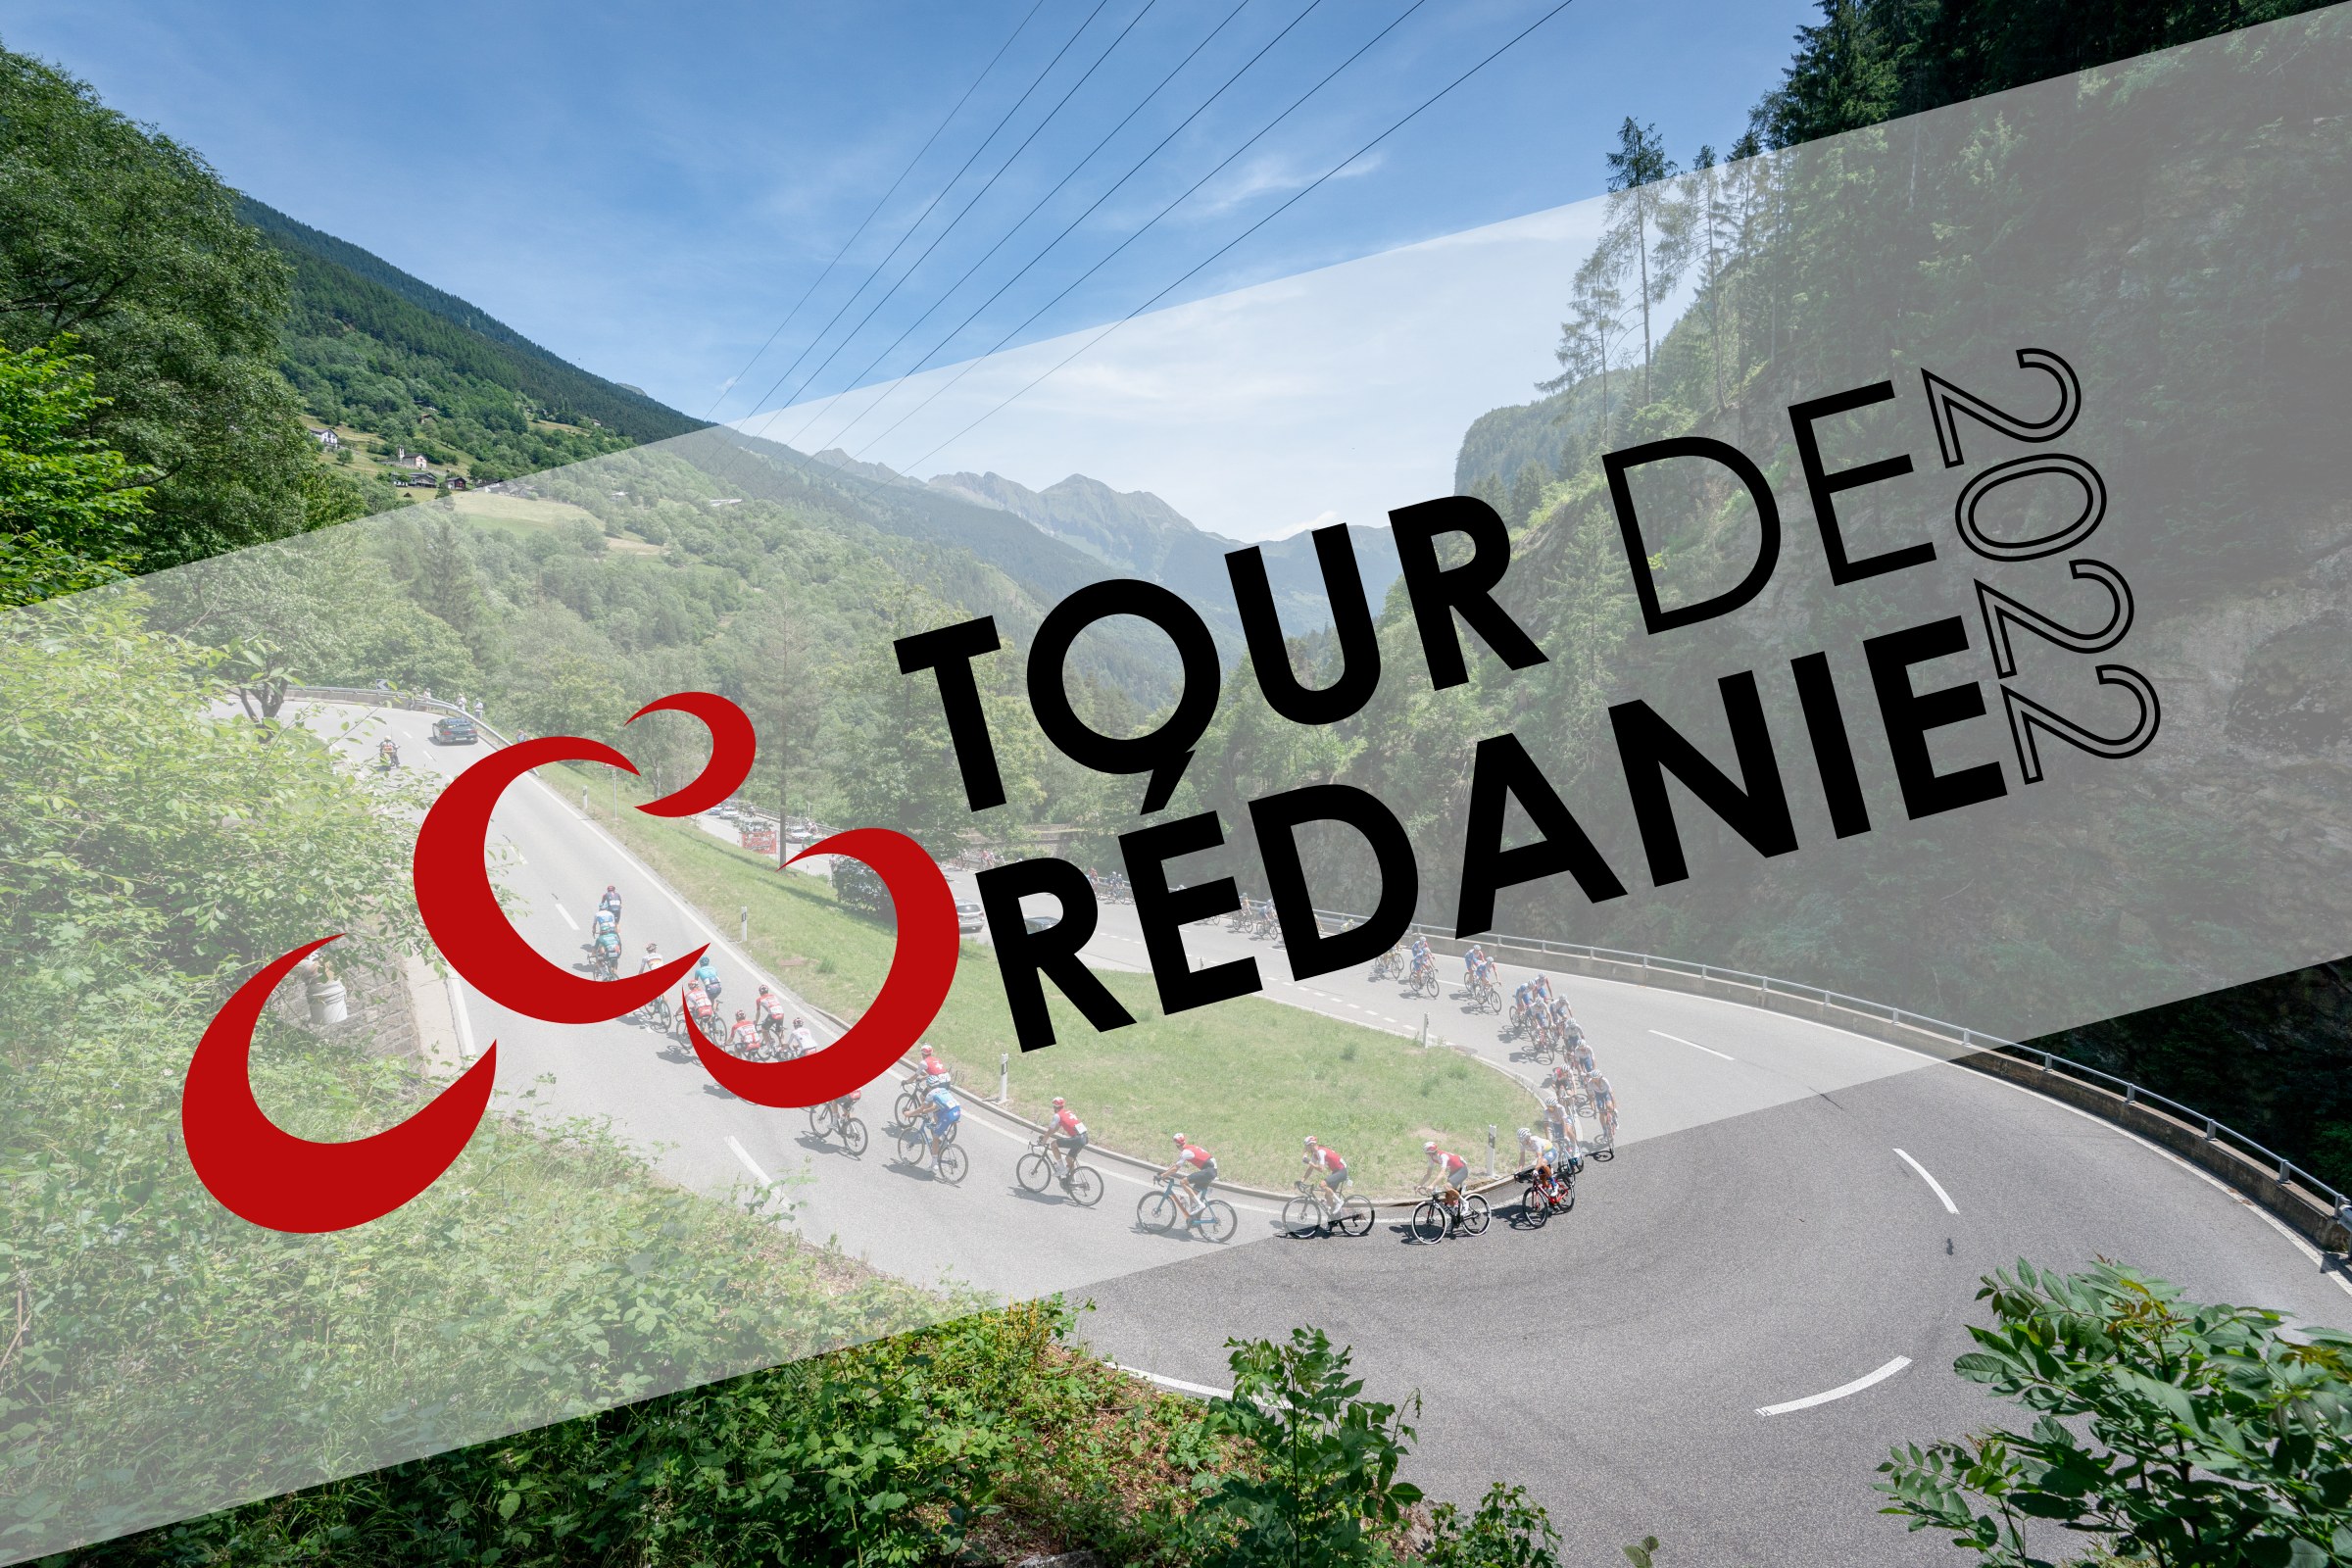 Tour de Rédanie 2022 | Résultats de la 4e étape ! - Page 5 Ztoy